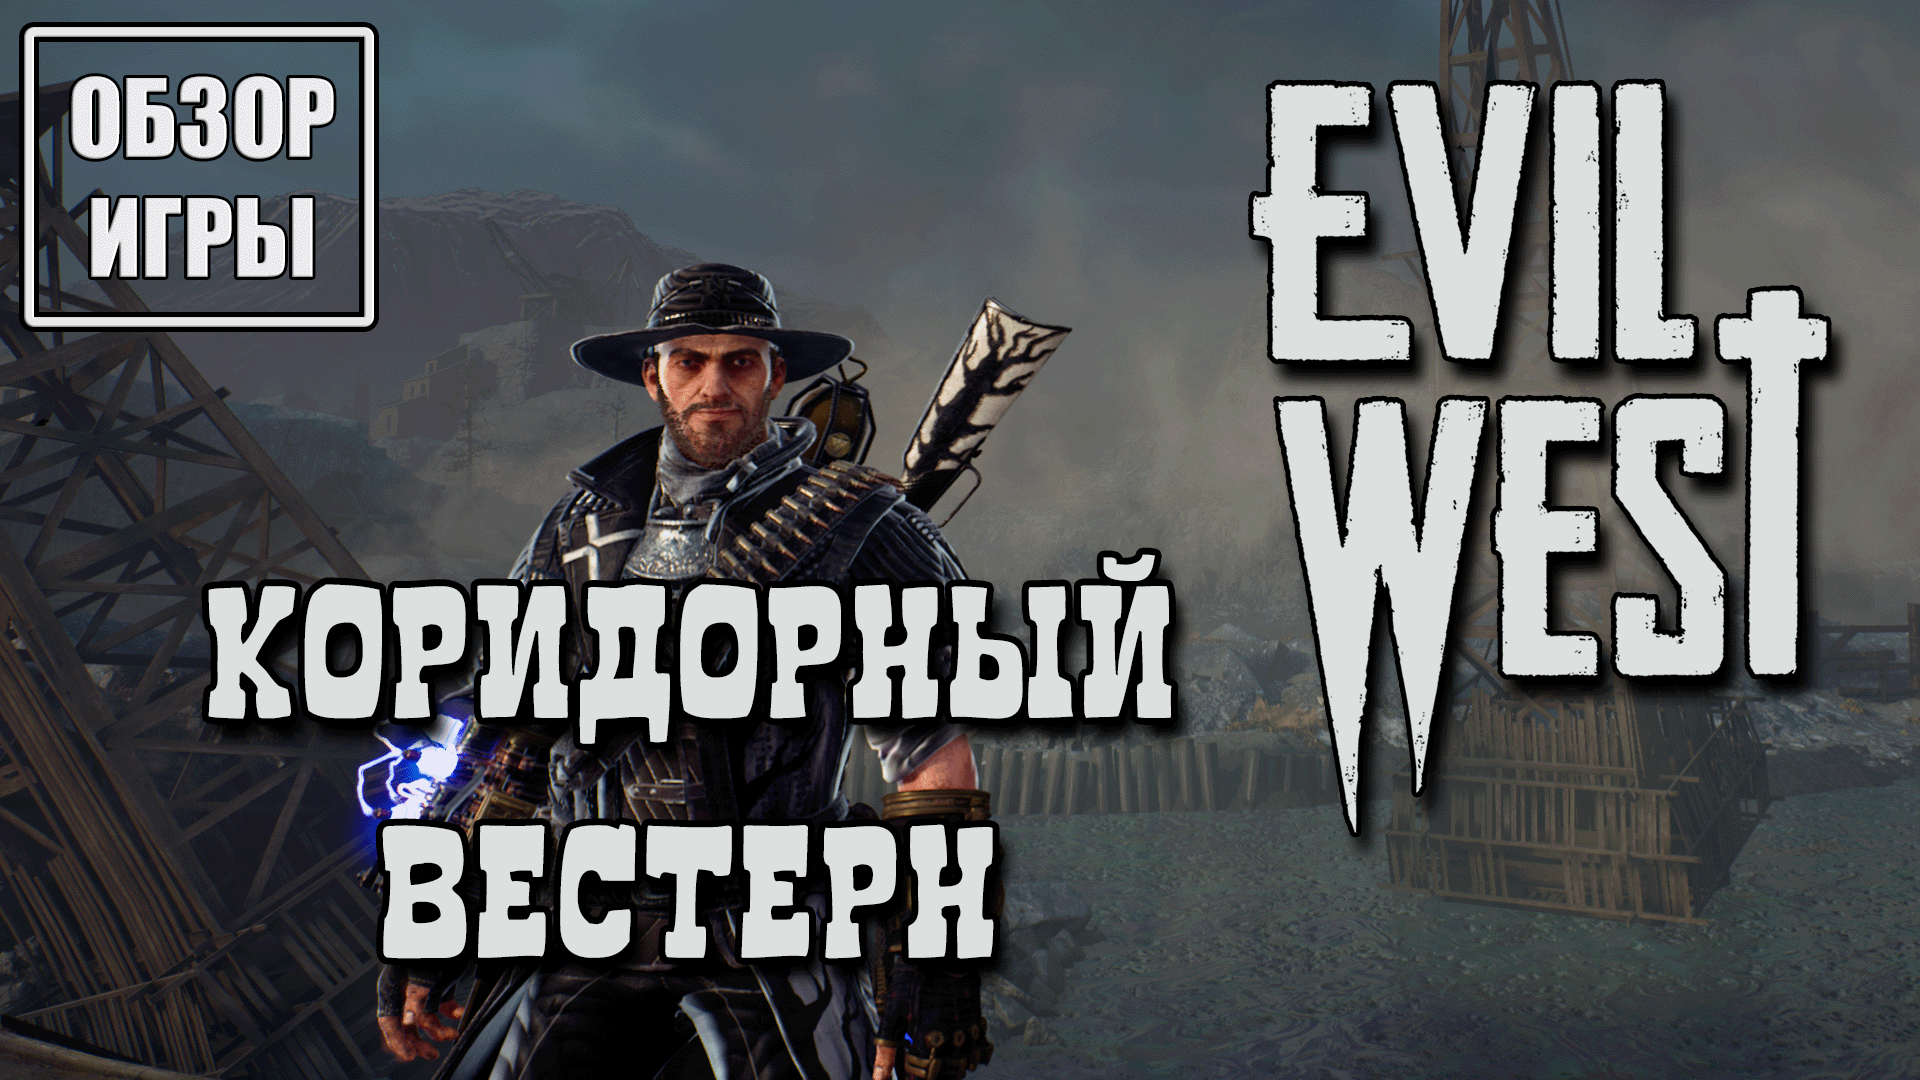 Обзор игры Evil West | Коридорный вестерн